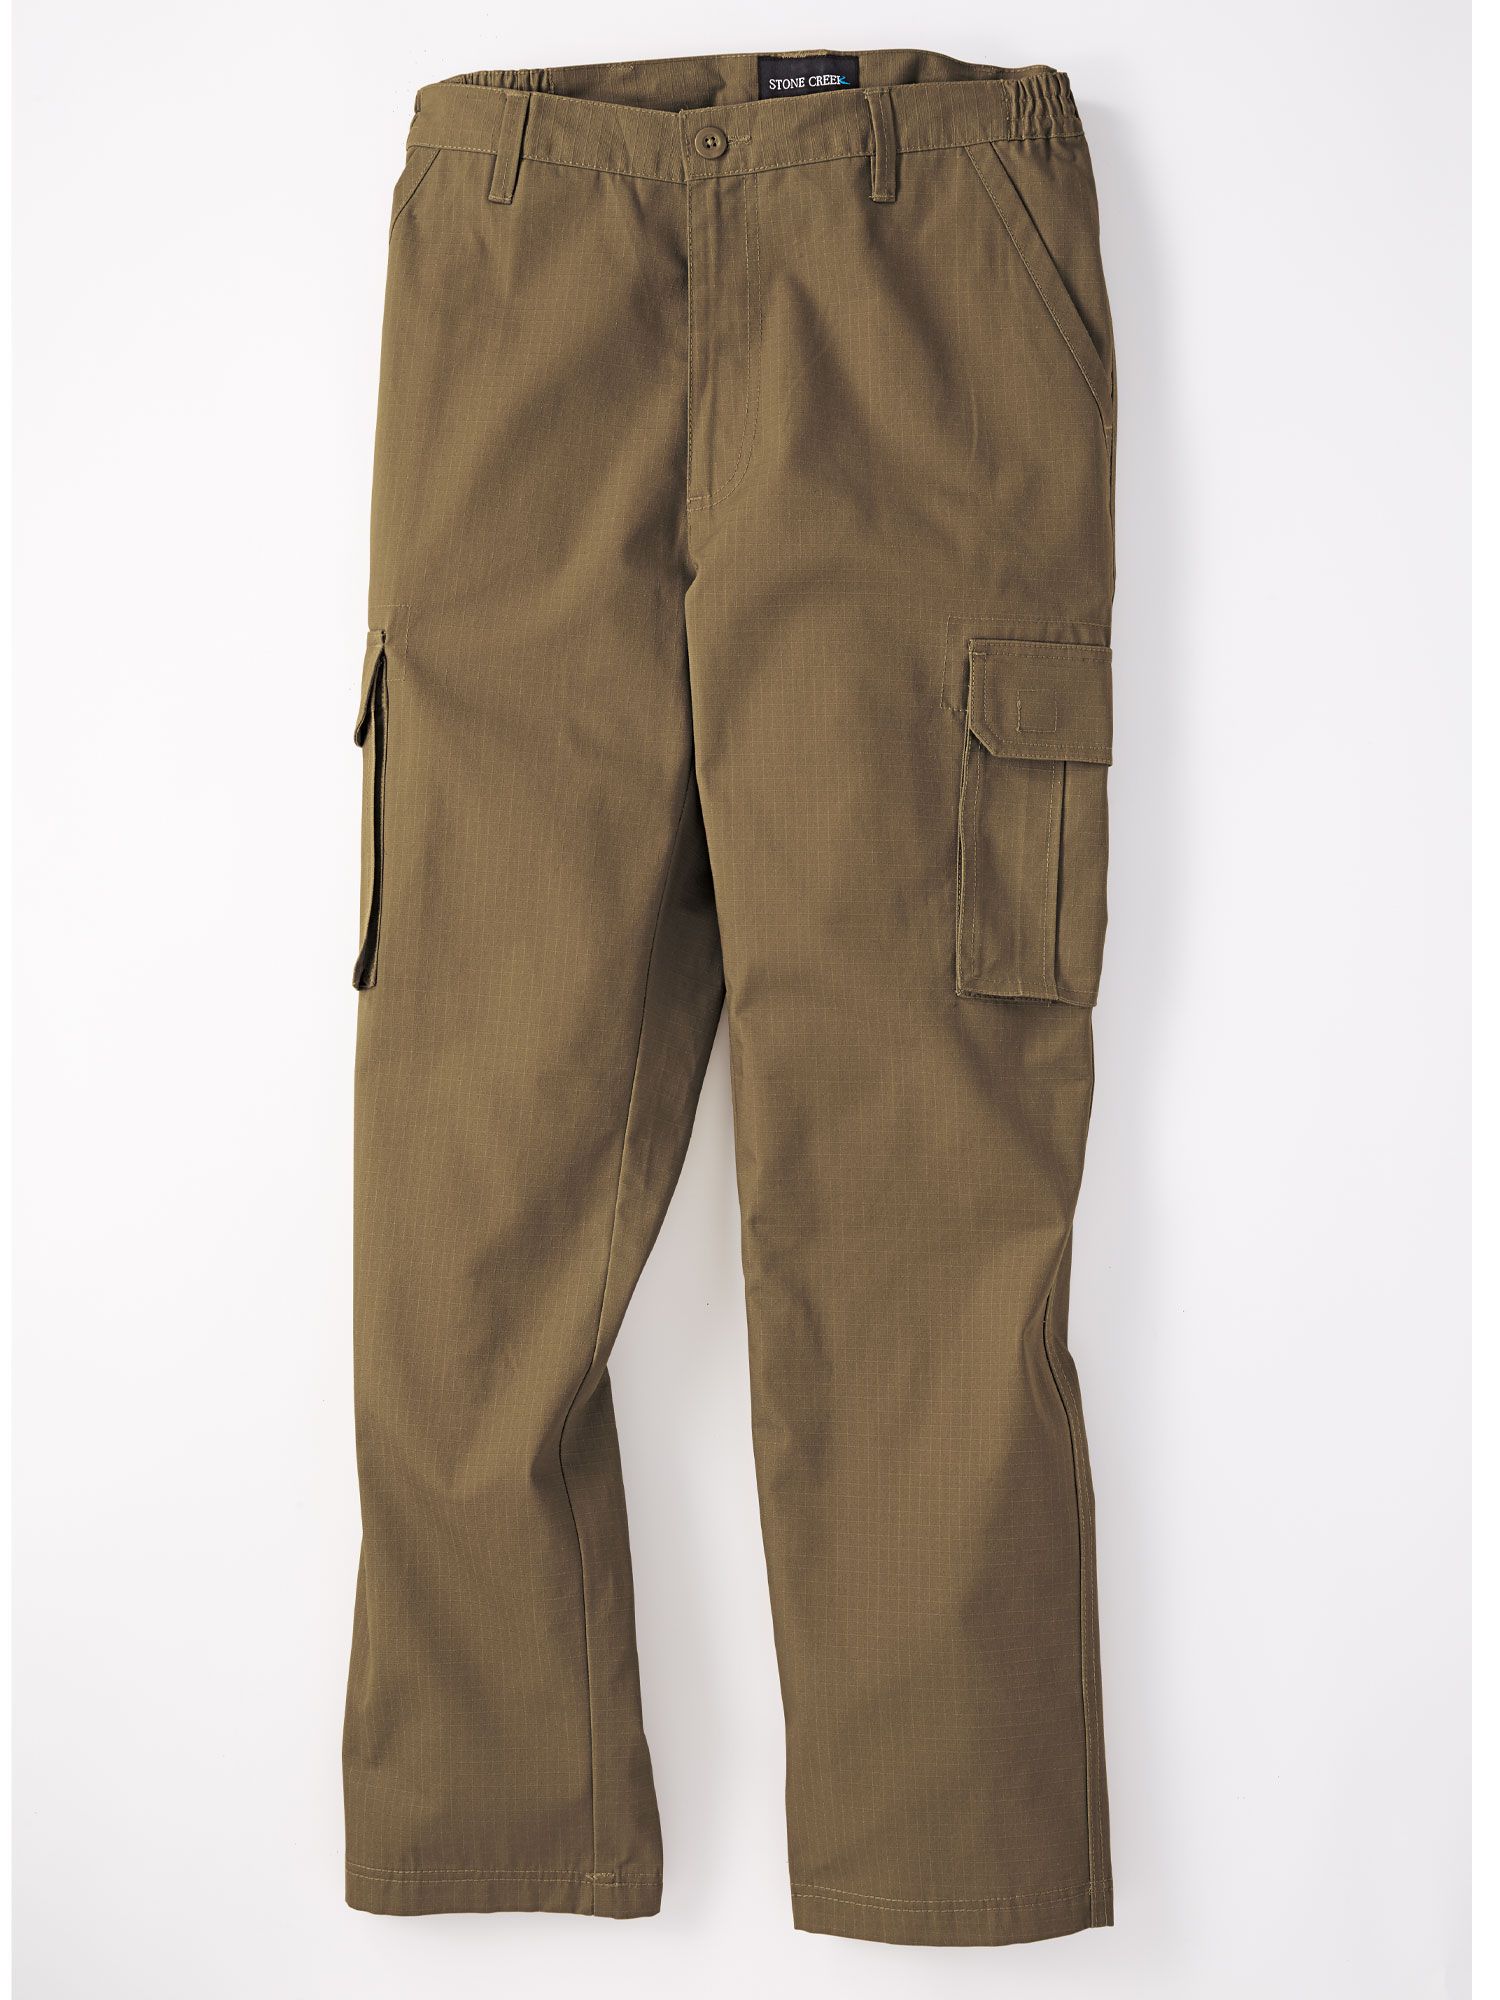 Realtree Edge #9824 NEW Men's Sz XXXL 48/50 Side Elastic Waistband Cargo Pants 